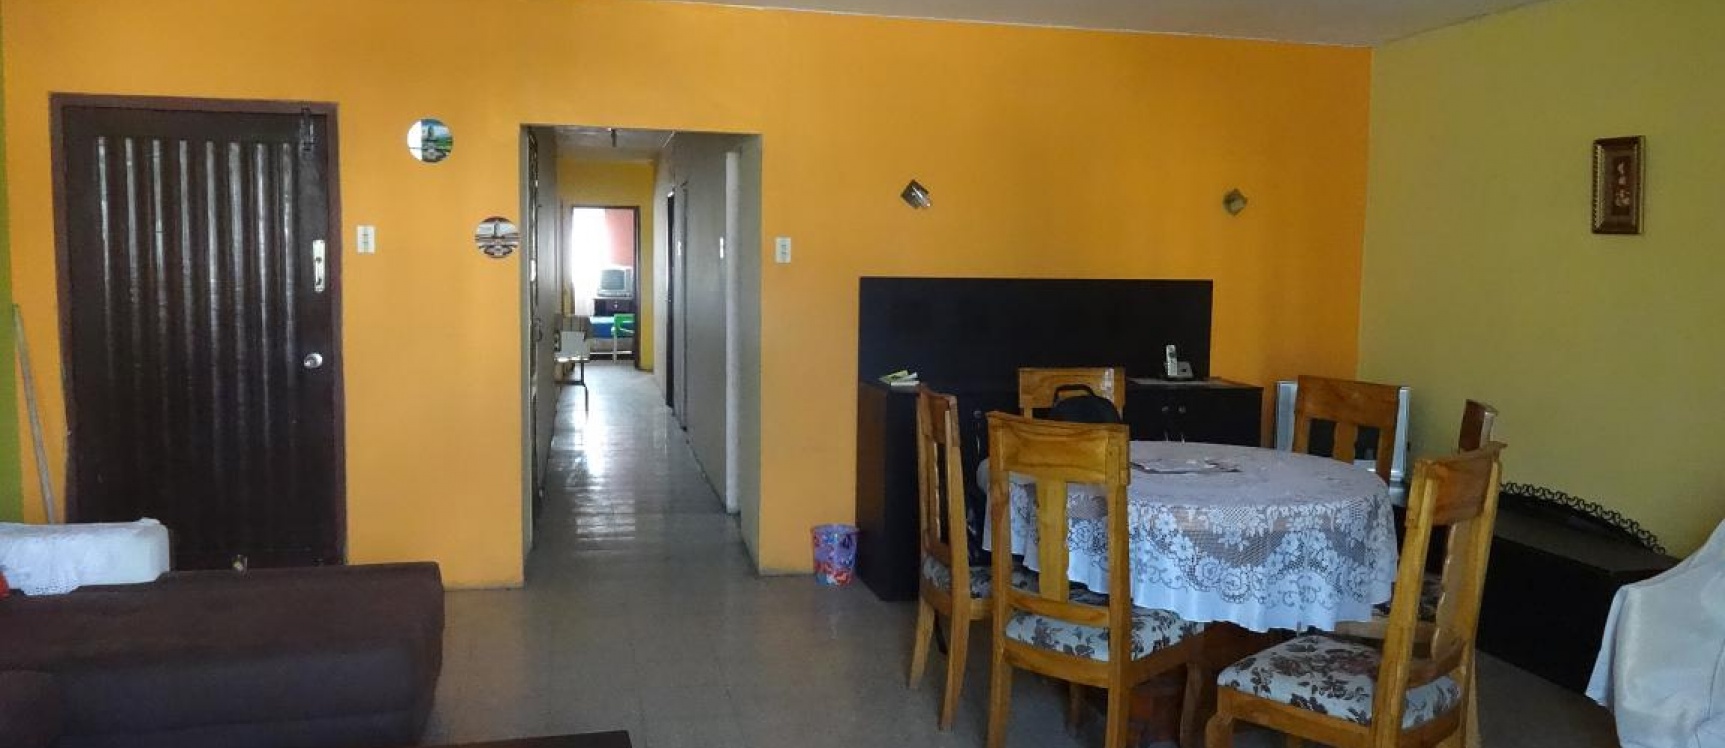 GeoBienes - Vendo Departamento en el Centro de la Ciudad  - Plusvalia Guayaquil Casas de venta y alquiler Inmobiliaria Ecuador